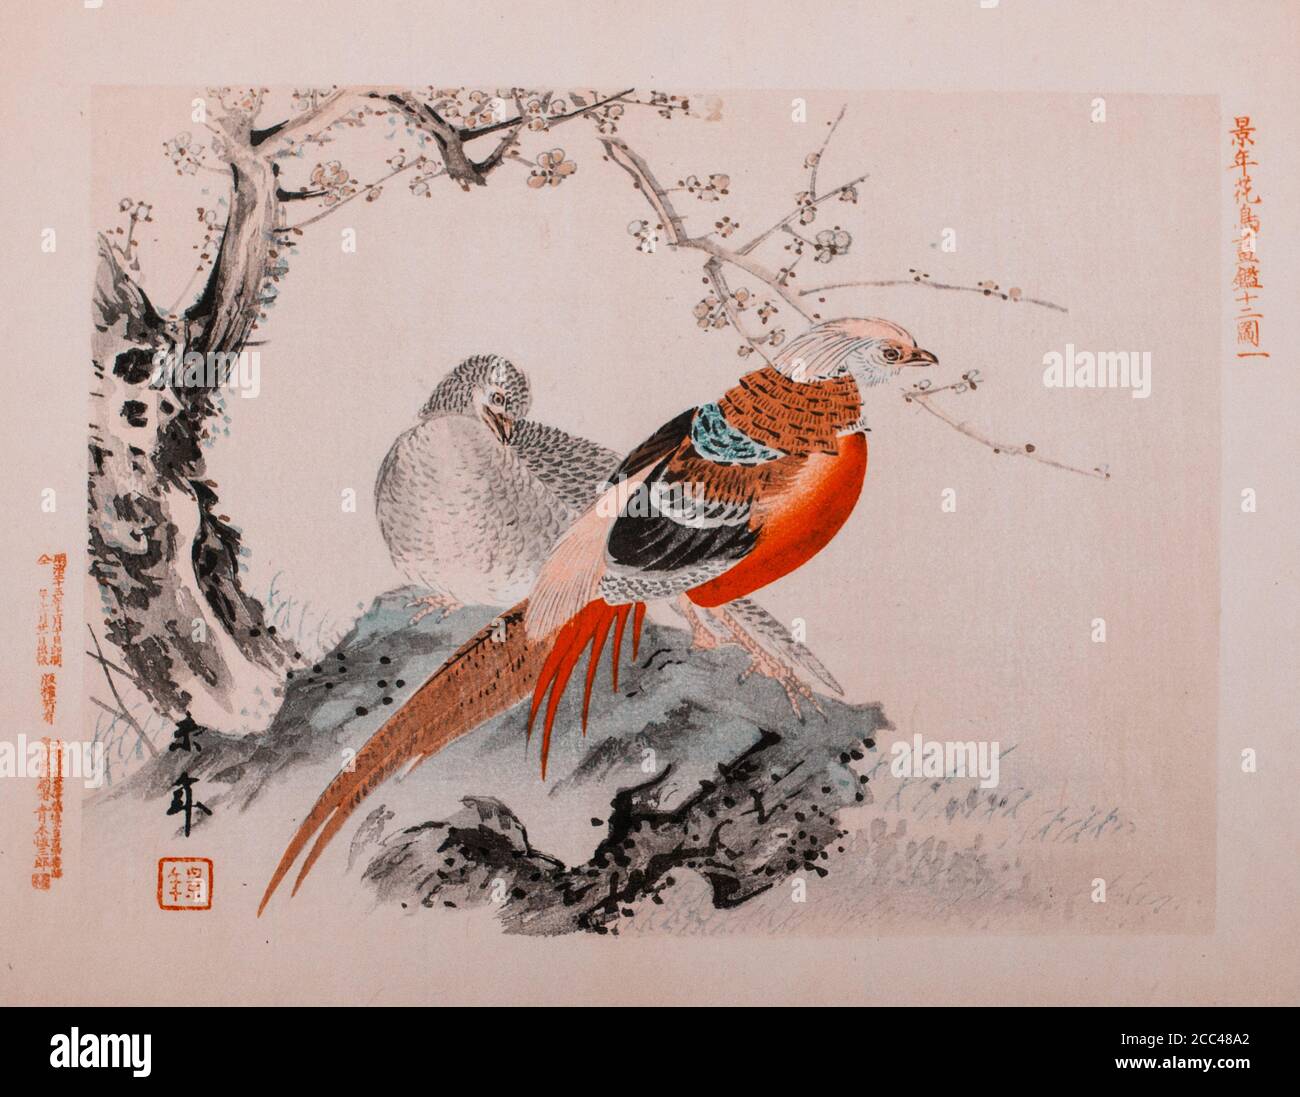 Imao keinen: Keinen Kacho Gafu (Four Seasons Bird and Flower Alben), chinesische Fasane. Japan. 1892 Imao keinen (1845 – 1924) war ein japanischer Maler Stockfoto